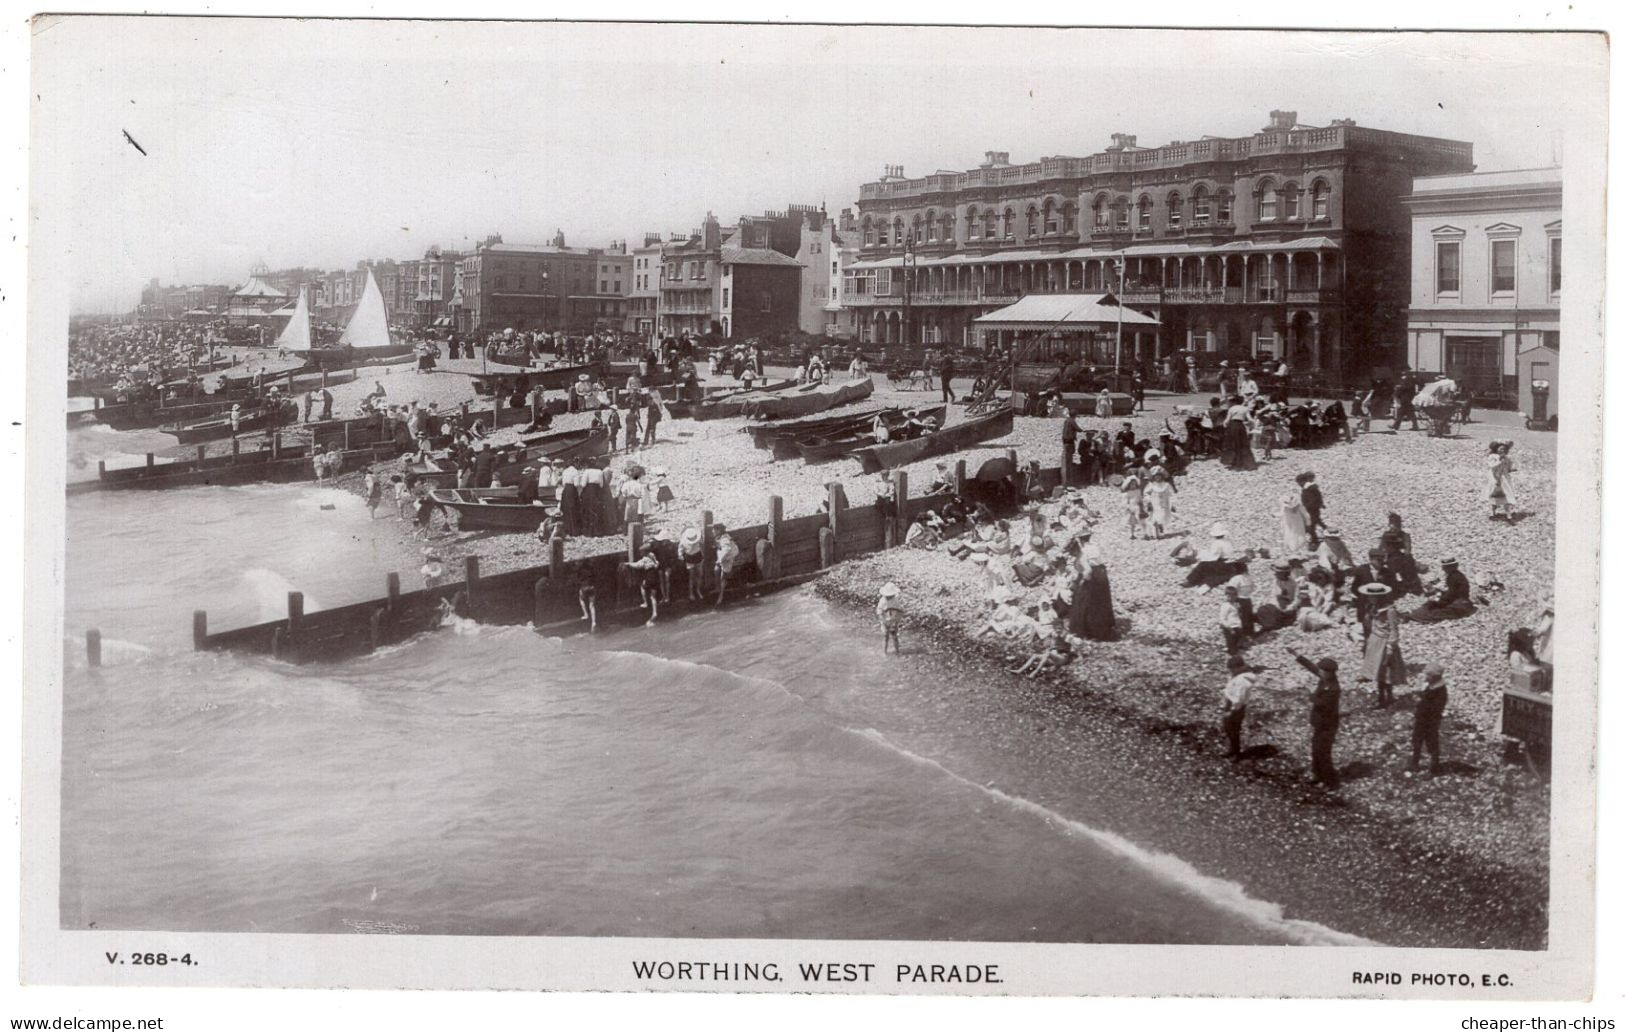 WORTHING - West Parade - Rapid Photo V.268 - 4 - Worthing